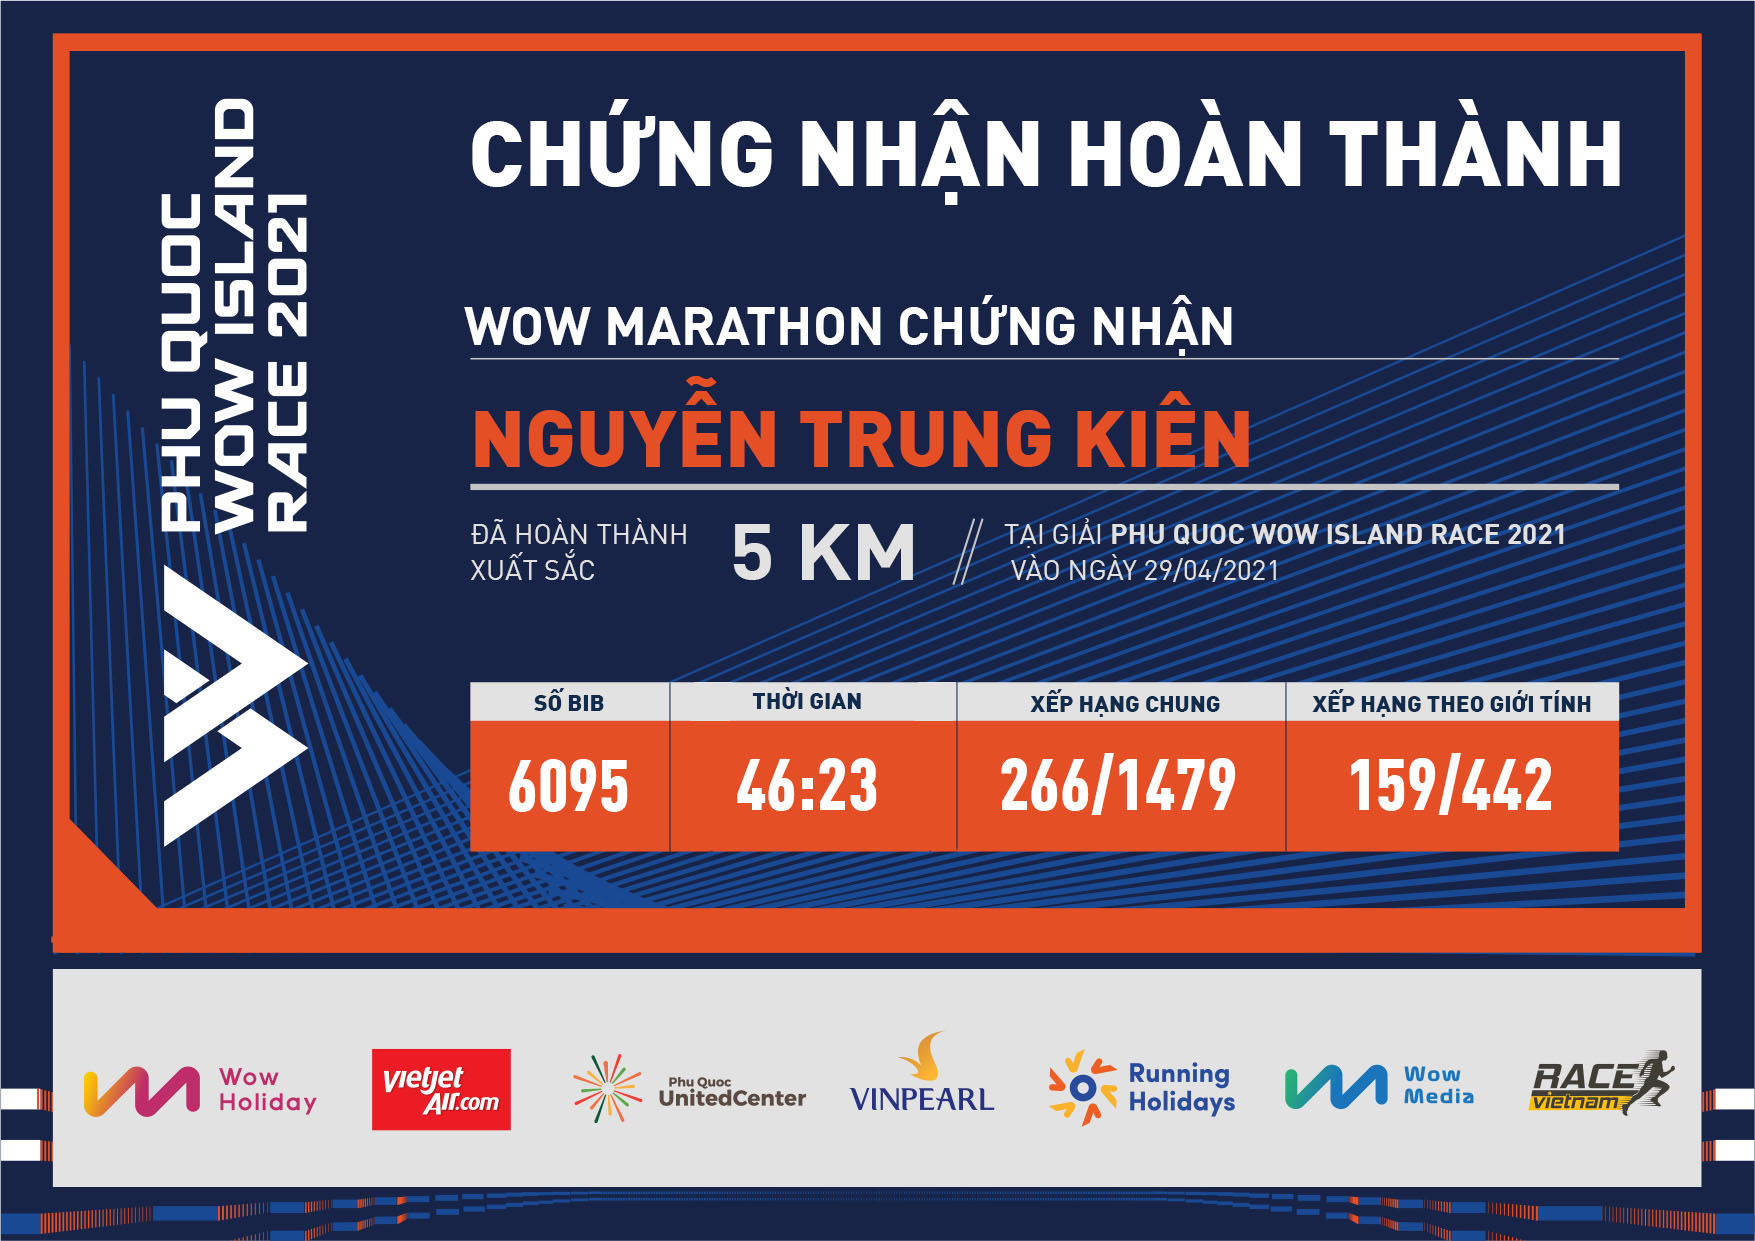 6095 - Nguyễn Trung Kiên